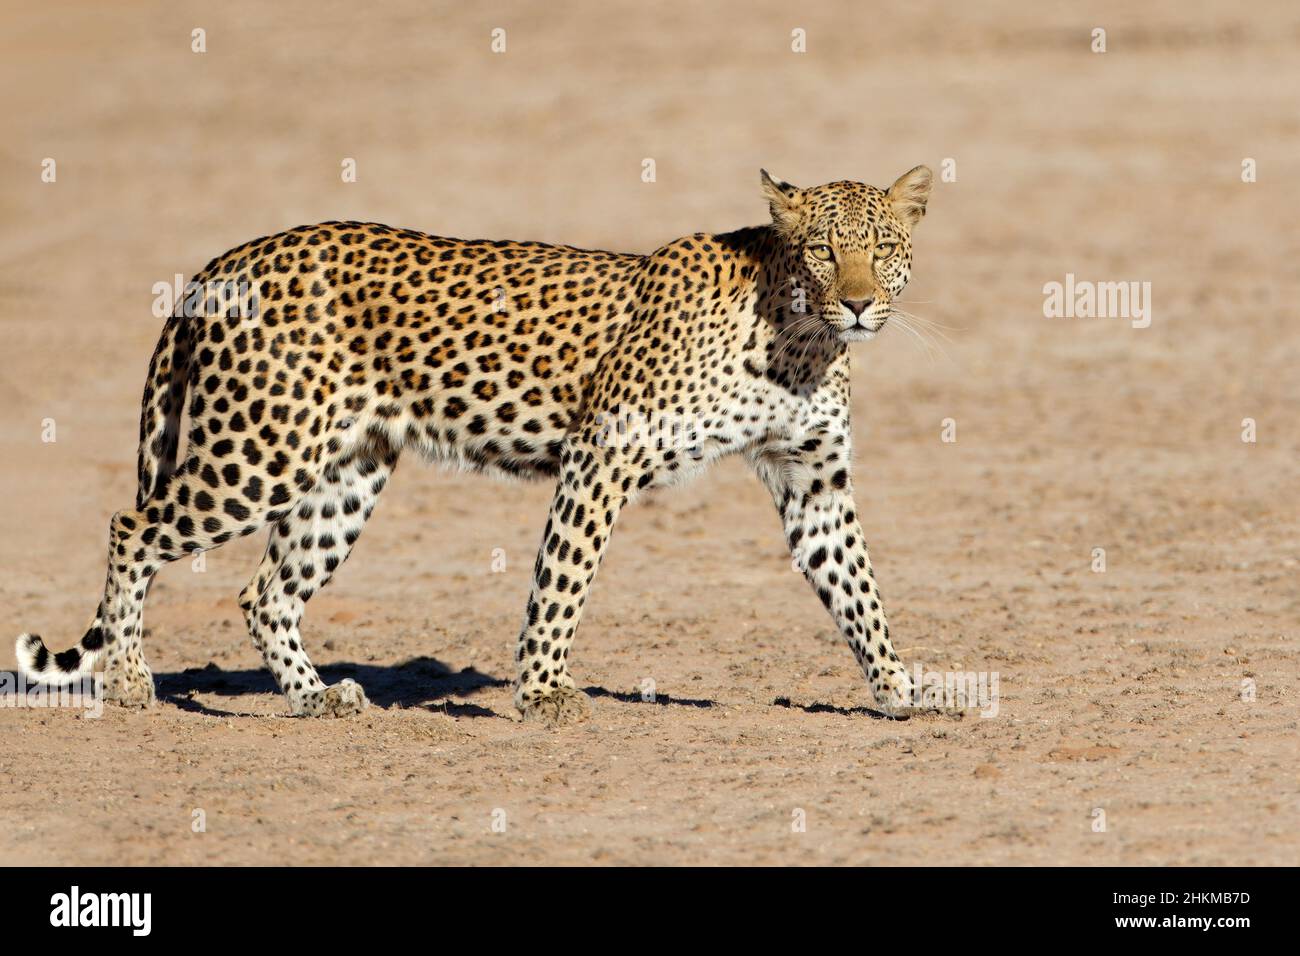 A leopard (Panthera pardus) walking, Kalahari desert, South Africa Stock Photo